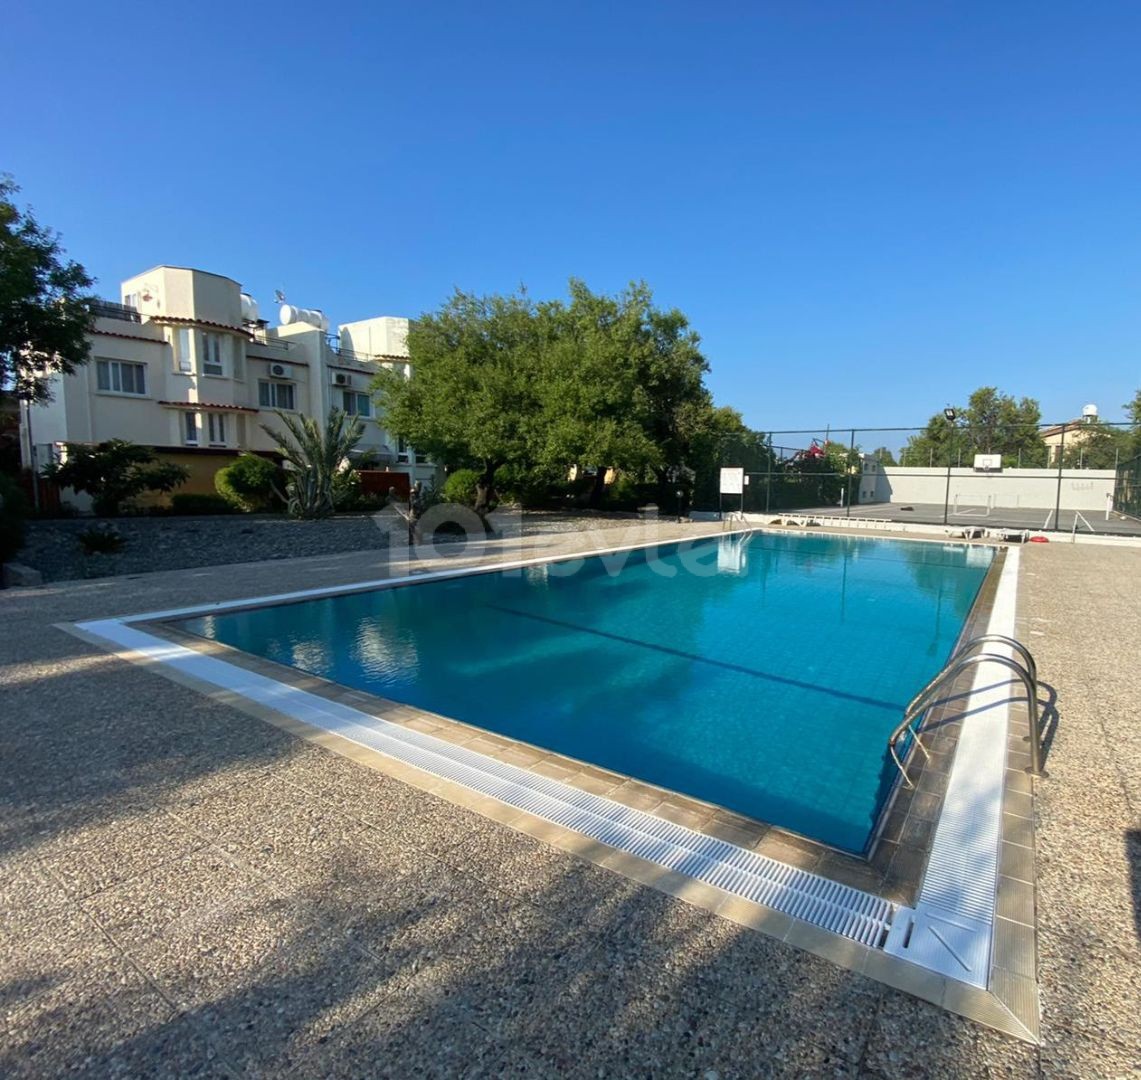 Tagesmietvilla in Kyrenia 3+1 mit Pool, Tennis- und Basketballplatz, 200 Meter vom Meer entfernt.